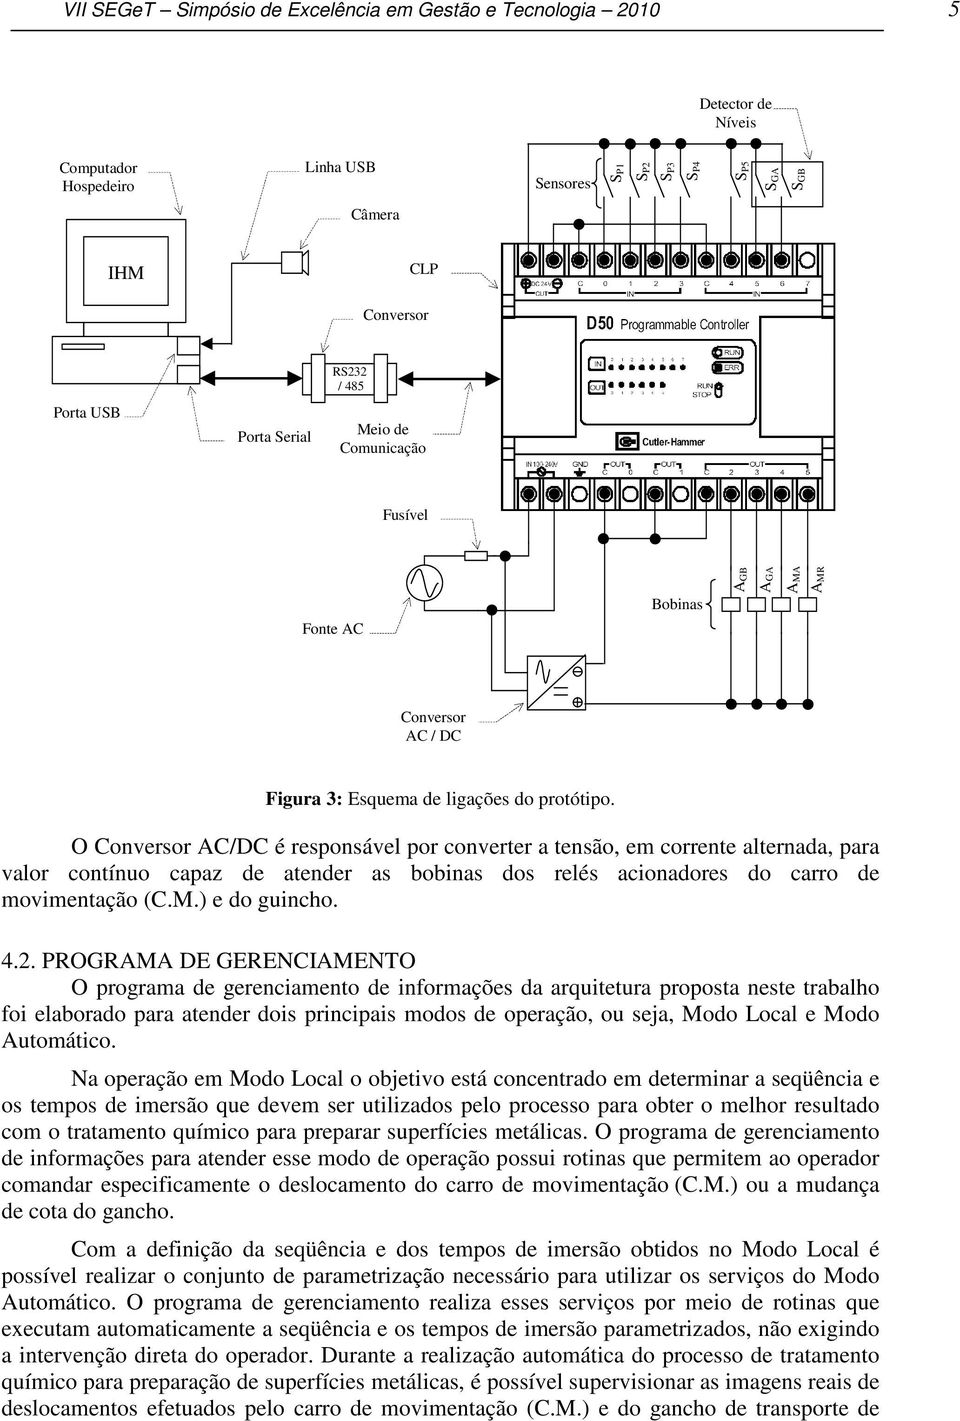 O Conversor AC/DC é responsável por converter a tensão, em corrente alternada, para valor contínuo capaz de atender as bobinas dos relés acionadores do carro de movimentação (C.M.) e do guincho. 4.2.